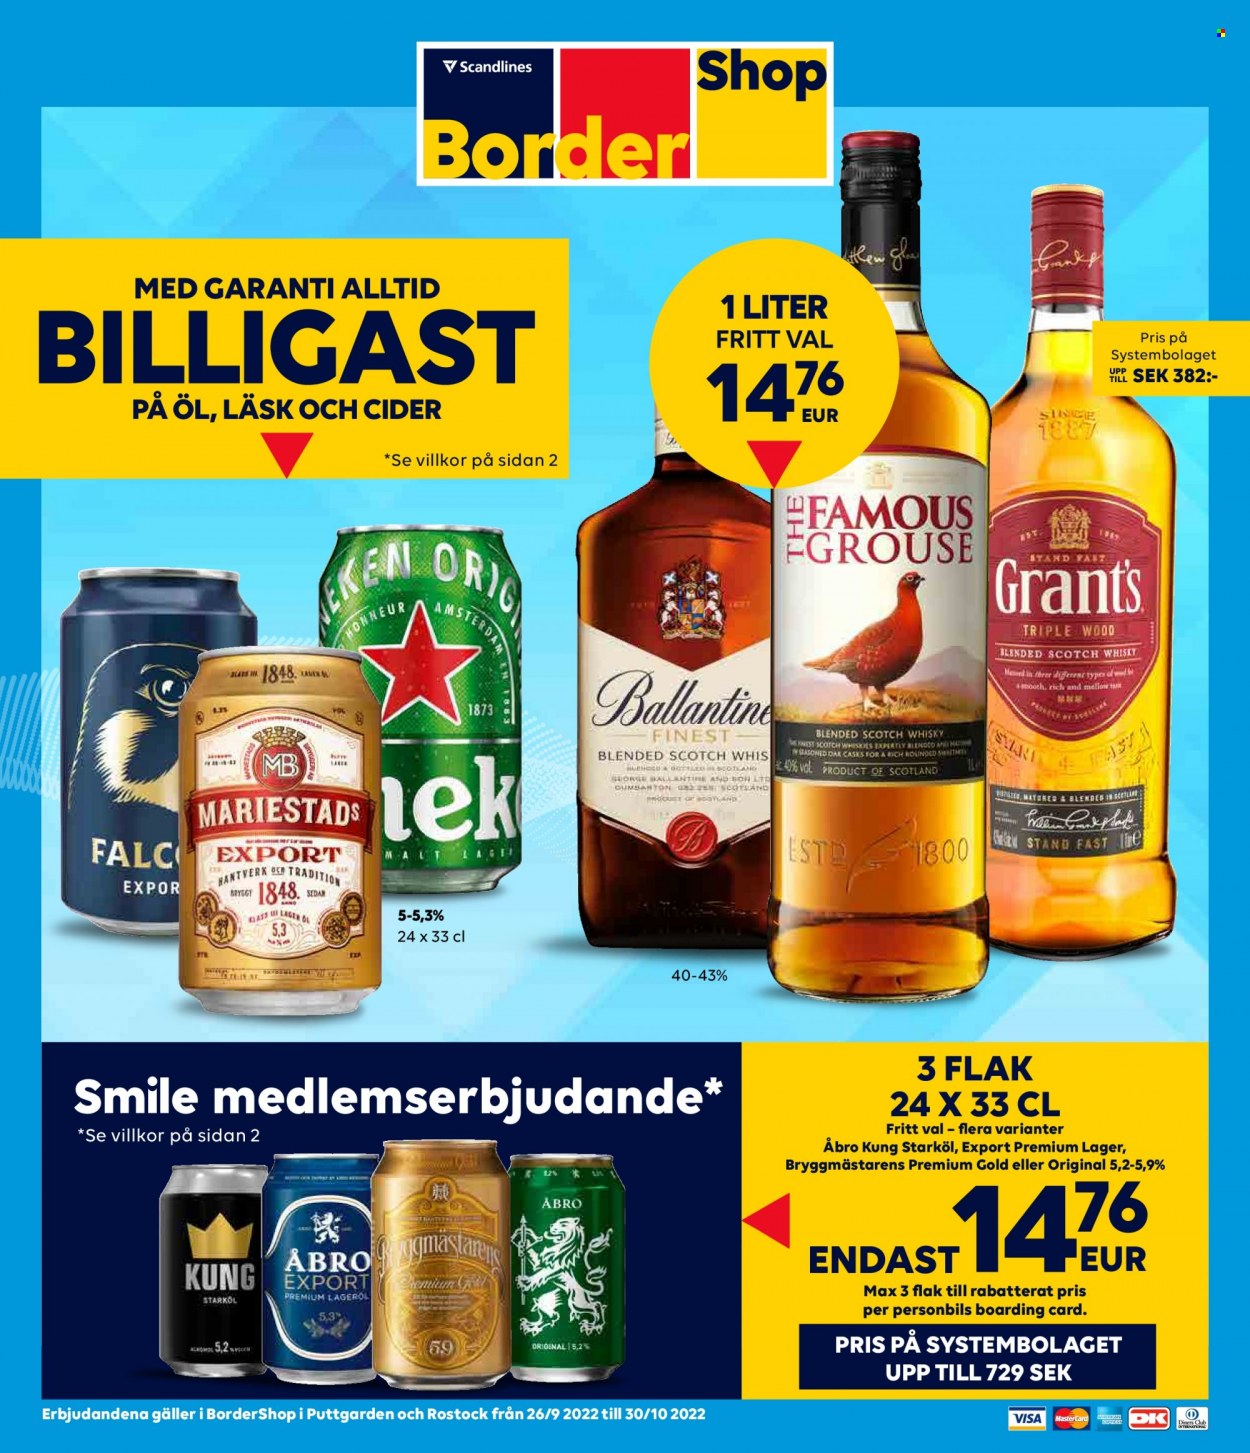 thumbnail - Border Shop reklamblad - 26/9 2022 - 30/10 2022 - varor från reklamblad - mariestads, starköl, Åbro, öl, cider, whisky, Blended Scotch Whisky, Grant‘s, scotch whisky. Sida 1.